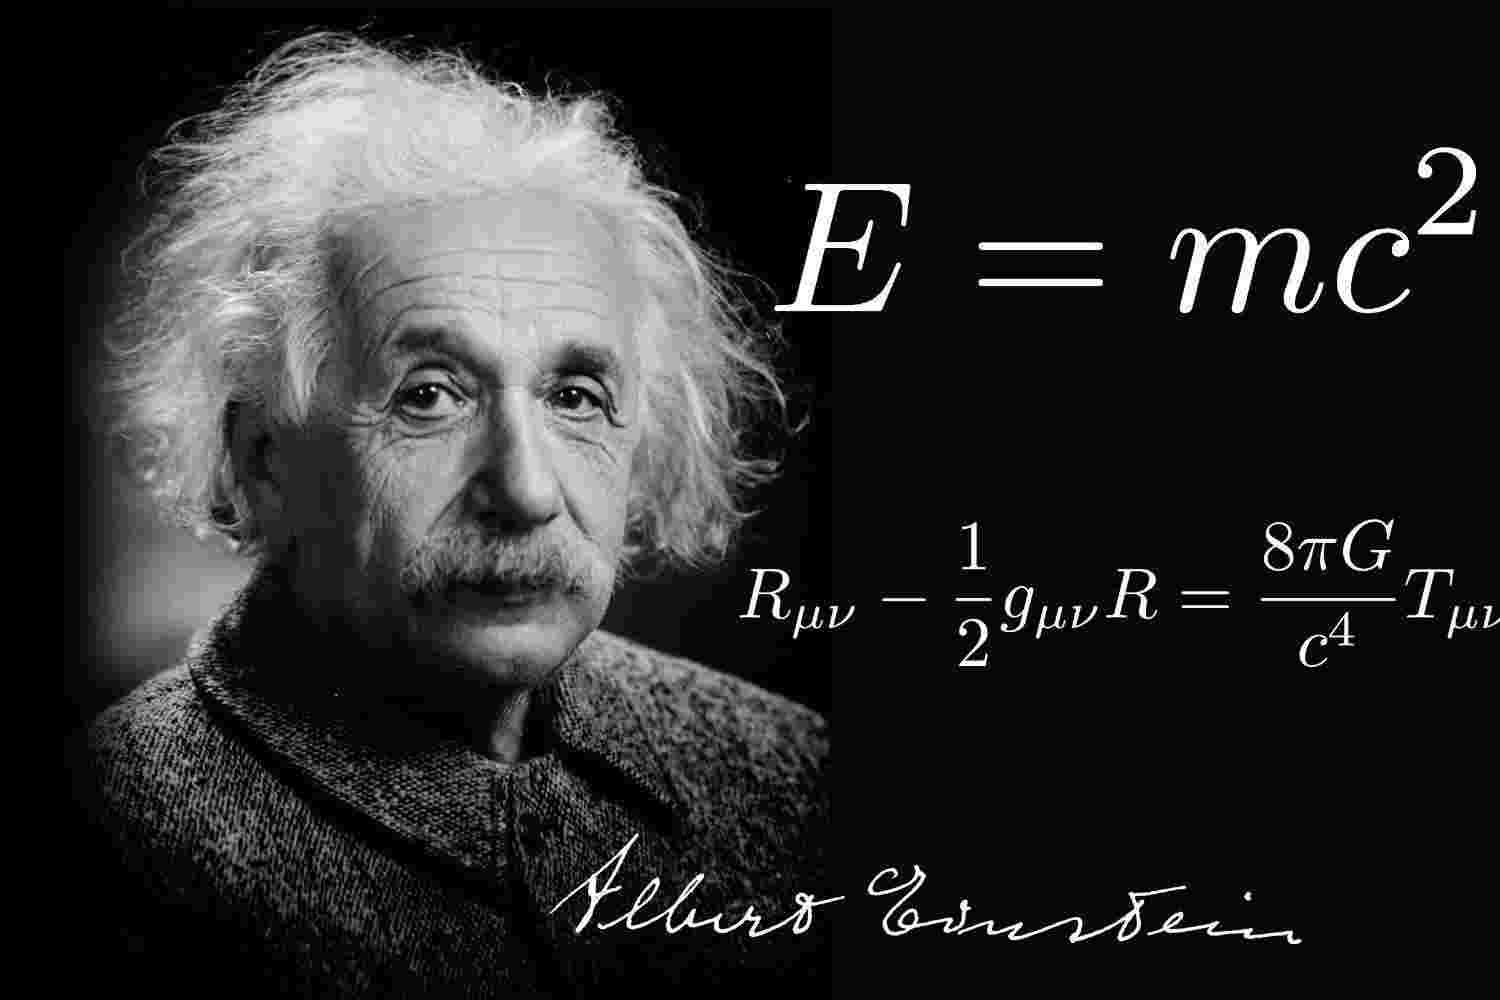 爱因斯坦对鬼的解释：鬼魂只不过是人的脑电波-第2张图片-爱薇女性网